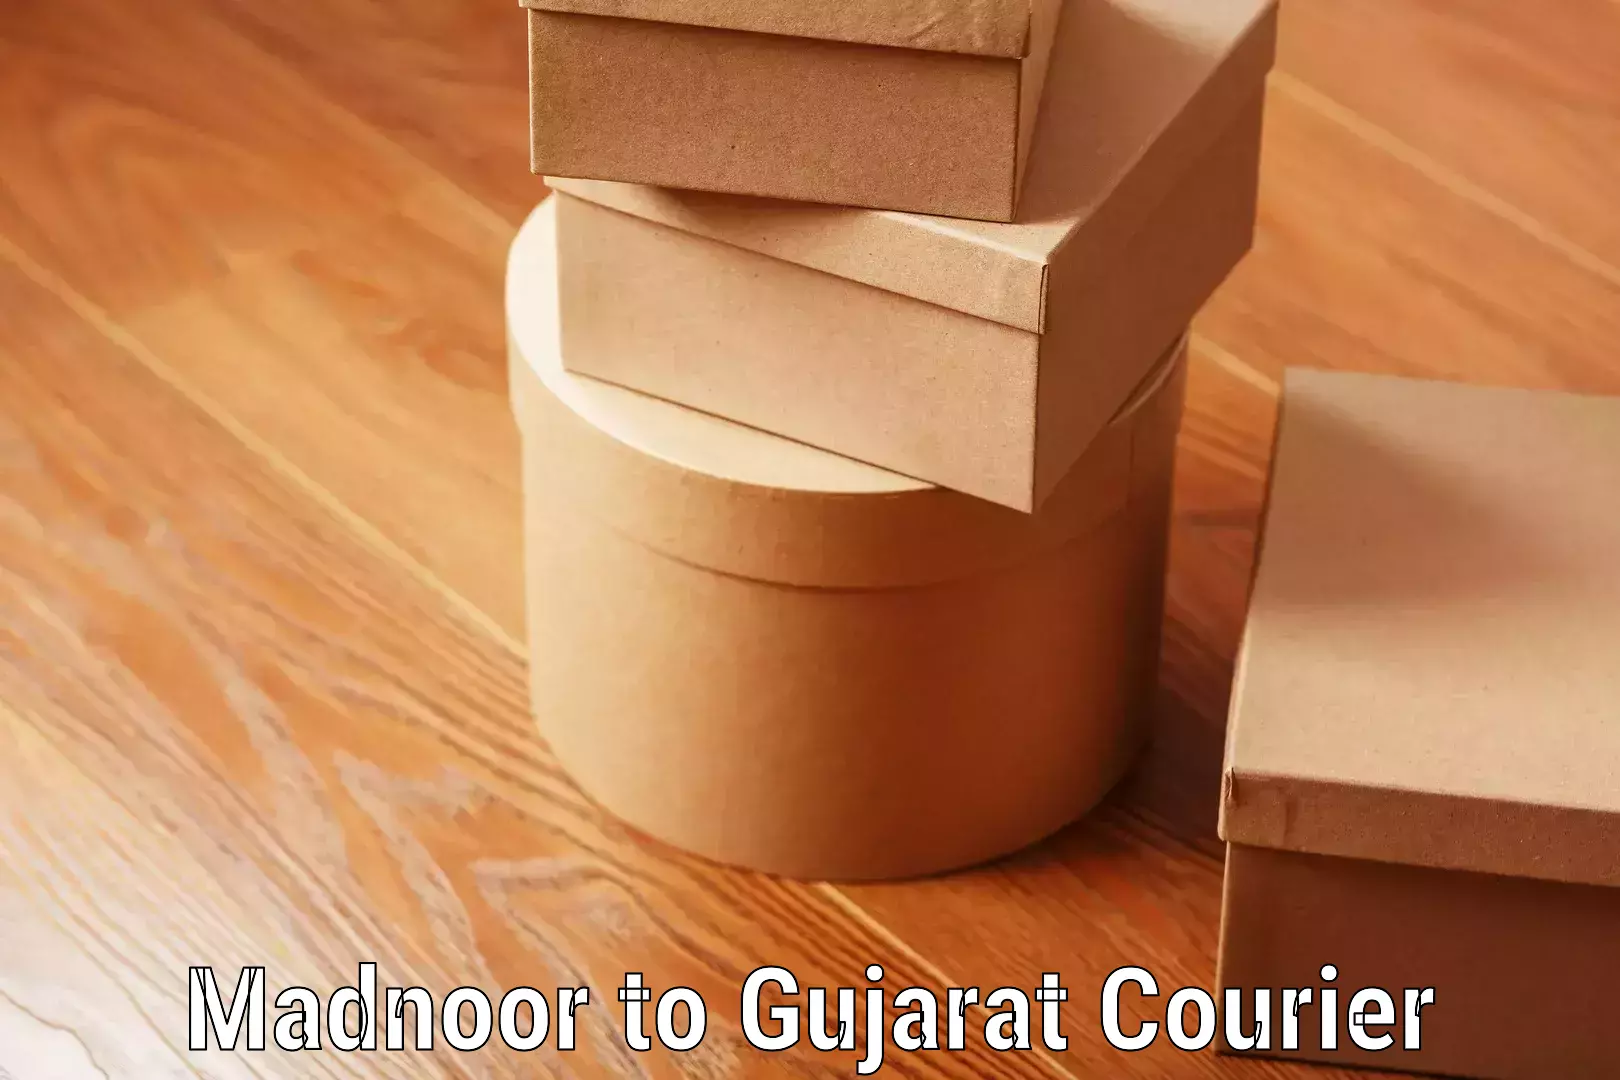 Luggage delivery estimate Madnoor to Gujarat